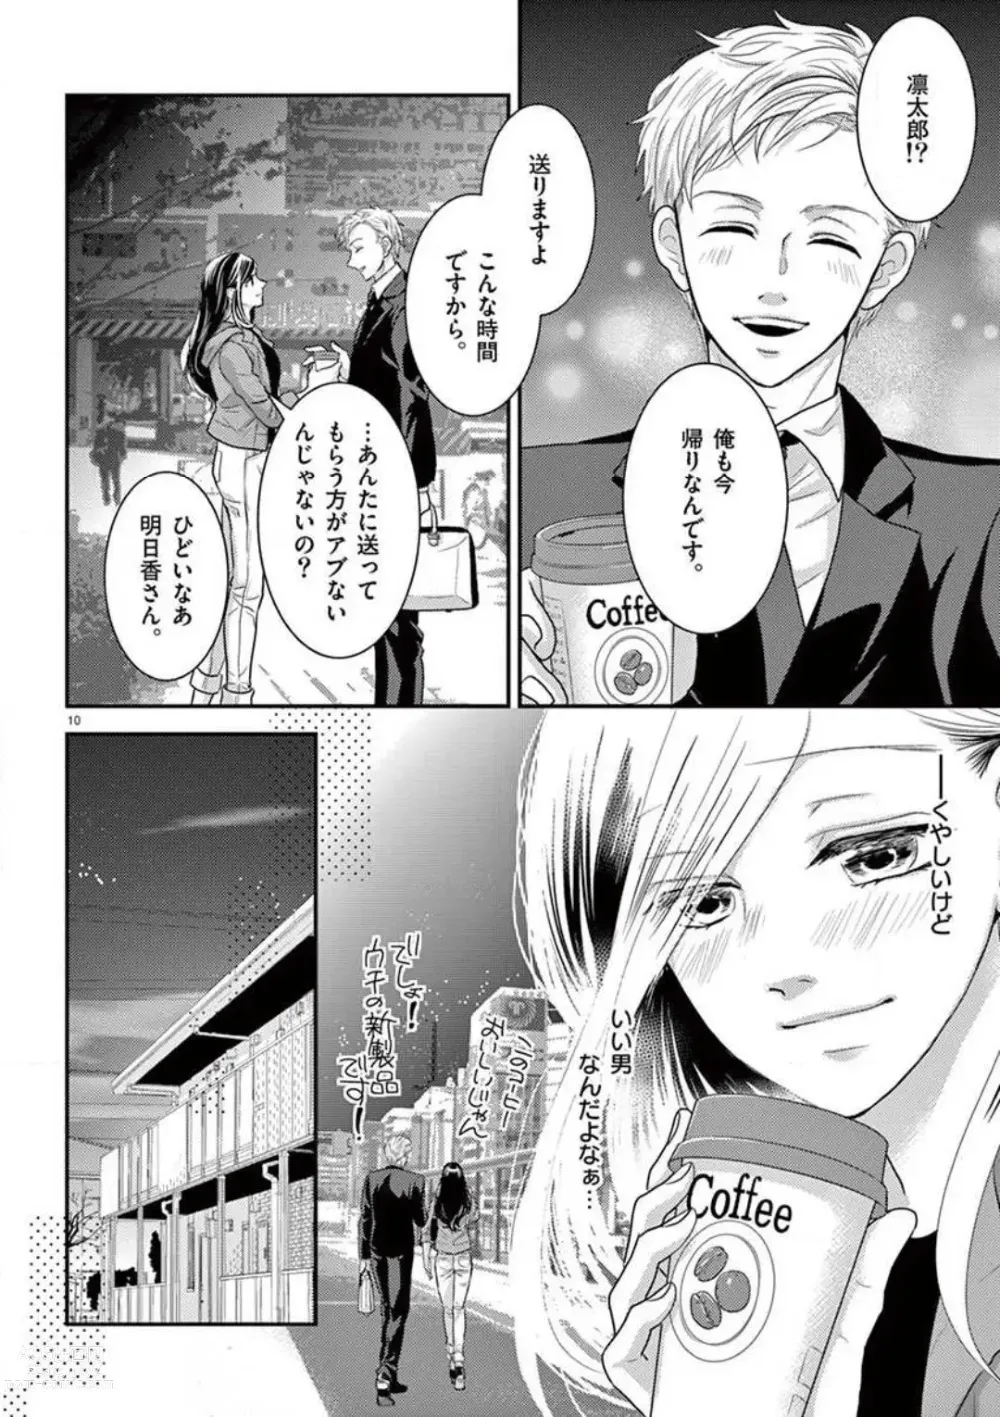 Page 10 of manga Yajū Suitchi ON!〜 Junjō Wanko wa Hageshi Sugi 〜